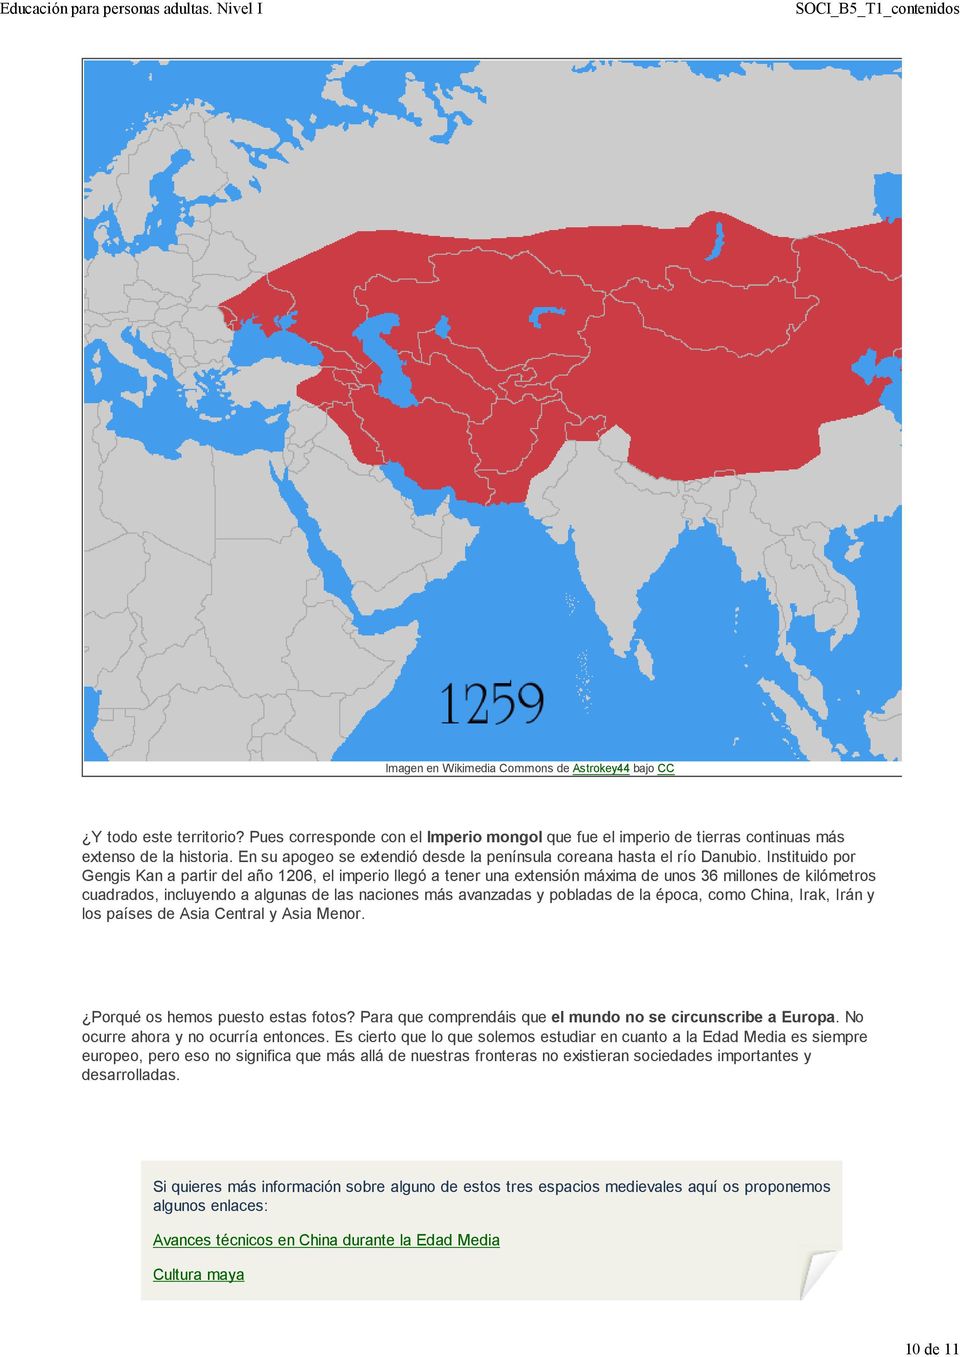 Instituido por Gengis Kan a partir del año 1206, el imperio llegó a tener una extensión máxima de unos 36 millones de kilómetros cuadrados, incluyendo a algunas de las naciones más avanzadas y